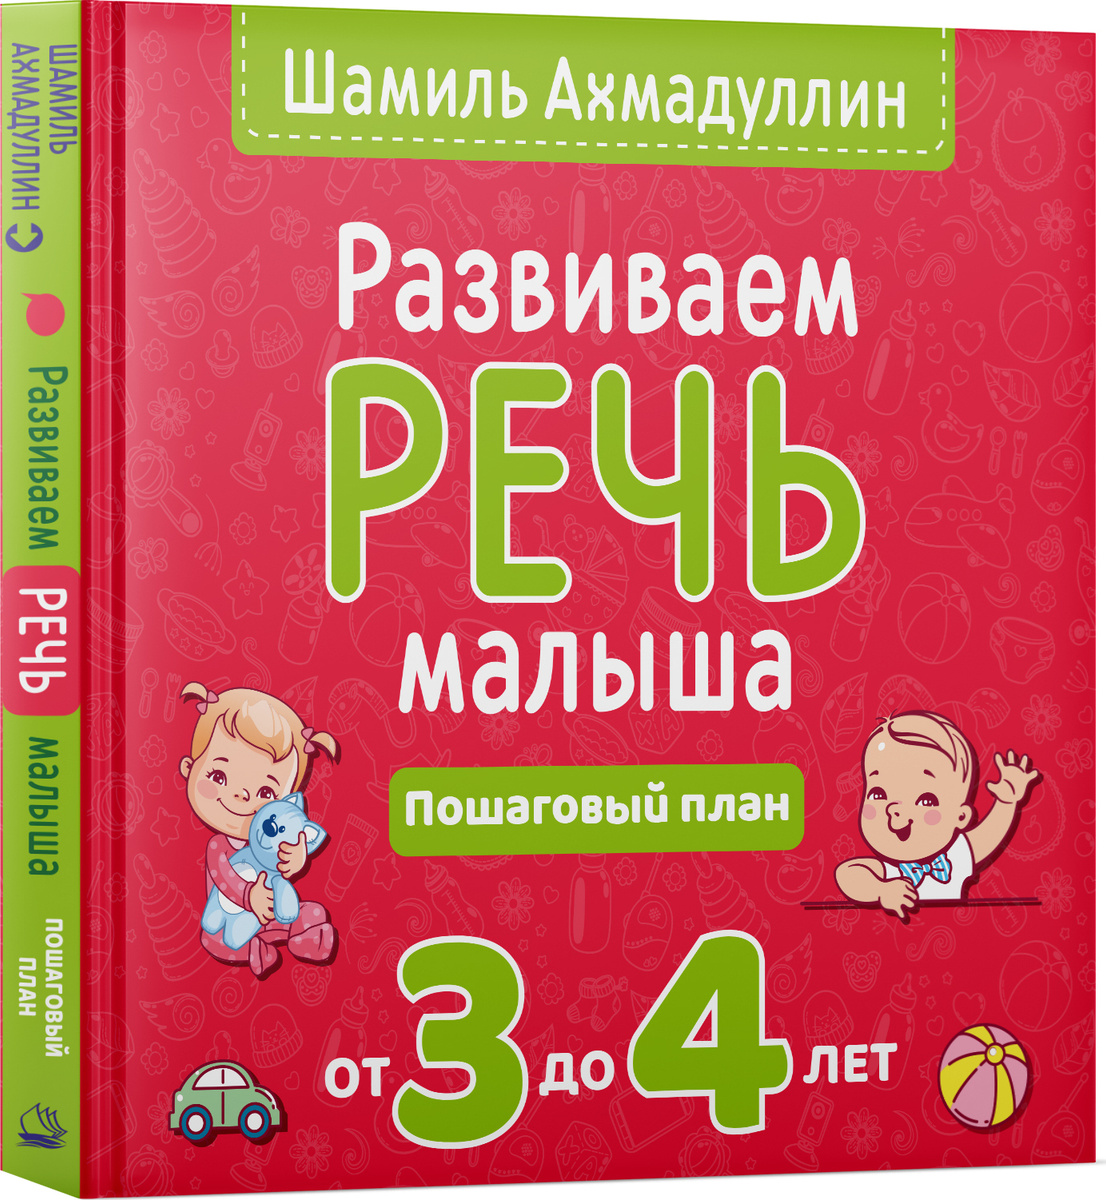 Развиваем речь малыша от 3 до 4 лет. Пошаговый план. | Ахмадуллин Шамиль Тагирович  #1